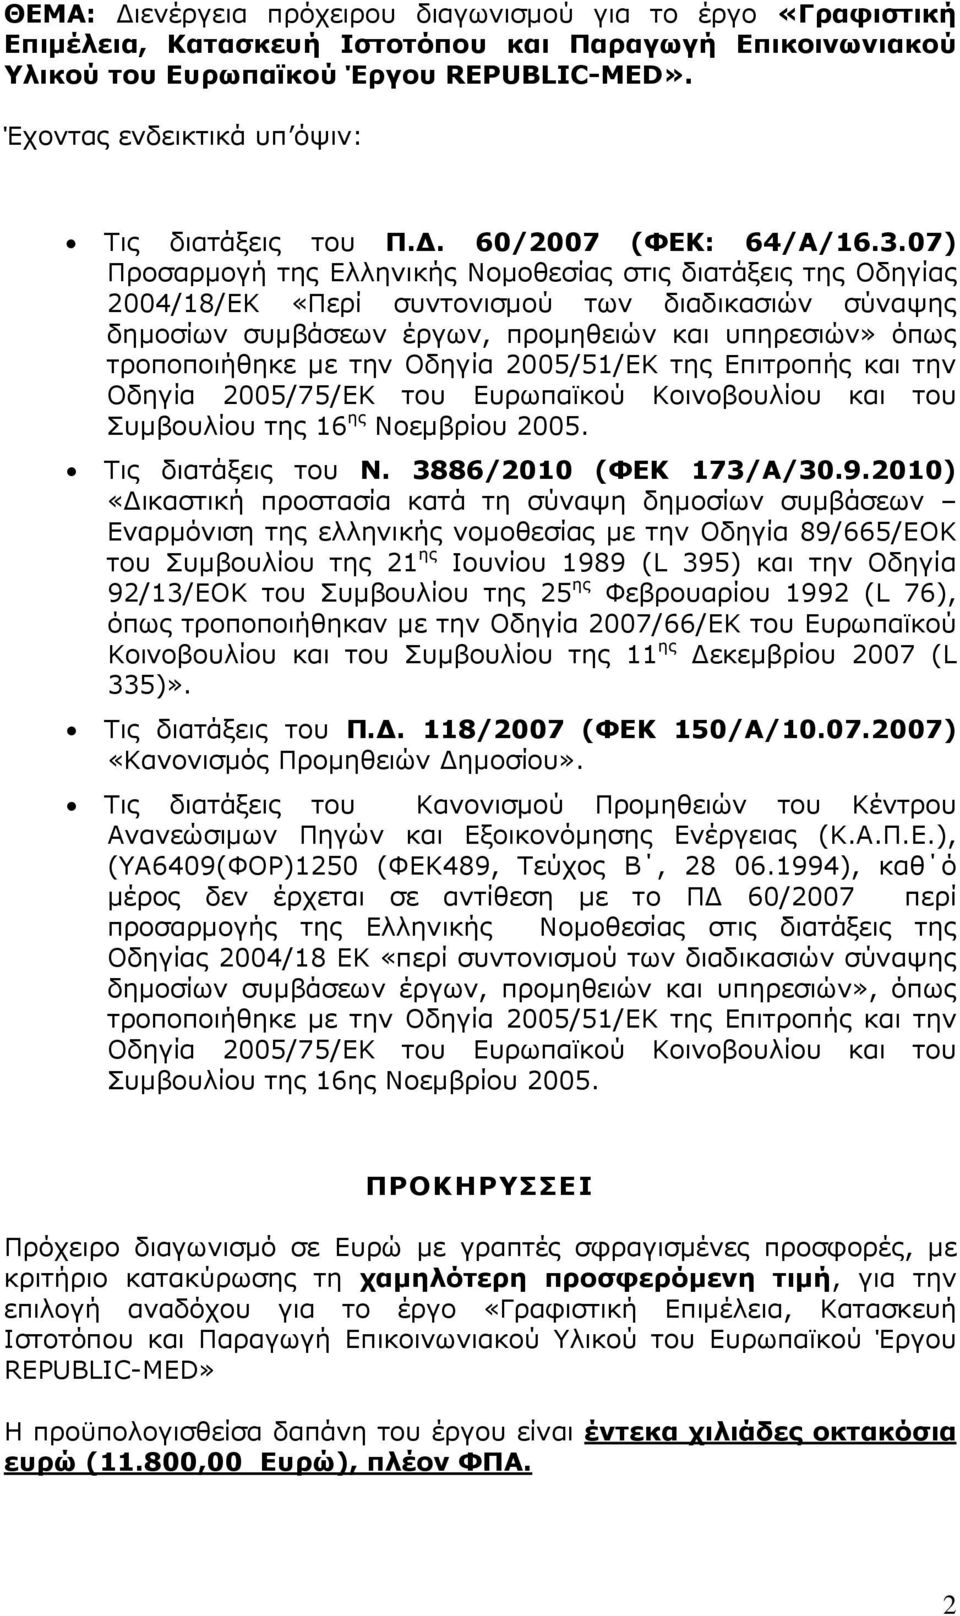 07) Προσαρµογή της Ελληνικής Νοµοθεσίας στις διατάξεις της Οδηγίας 2004/18/ΕΚ «Περί συντονισµού των διαδικασιών σύναψης δηµοσίων συµβάσεων έργων, προµηθειών και υπηρεσιών» όπως τροποποιήθηκε µε την